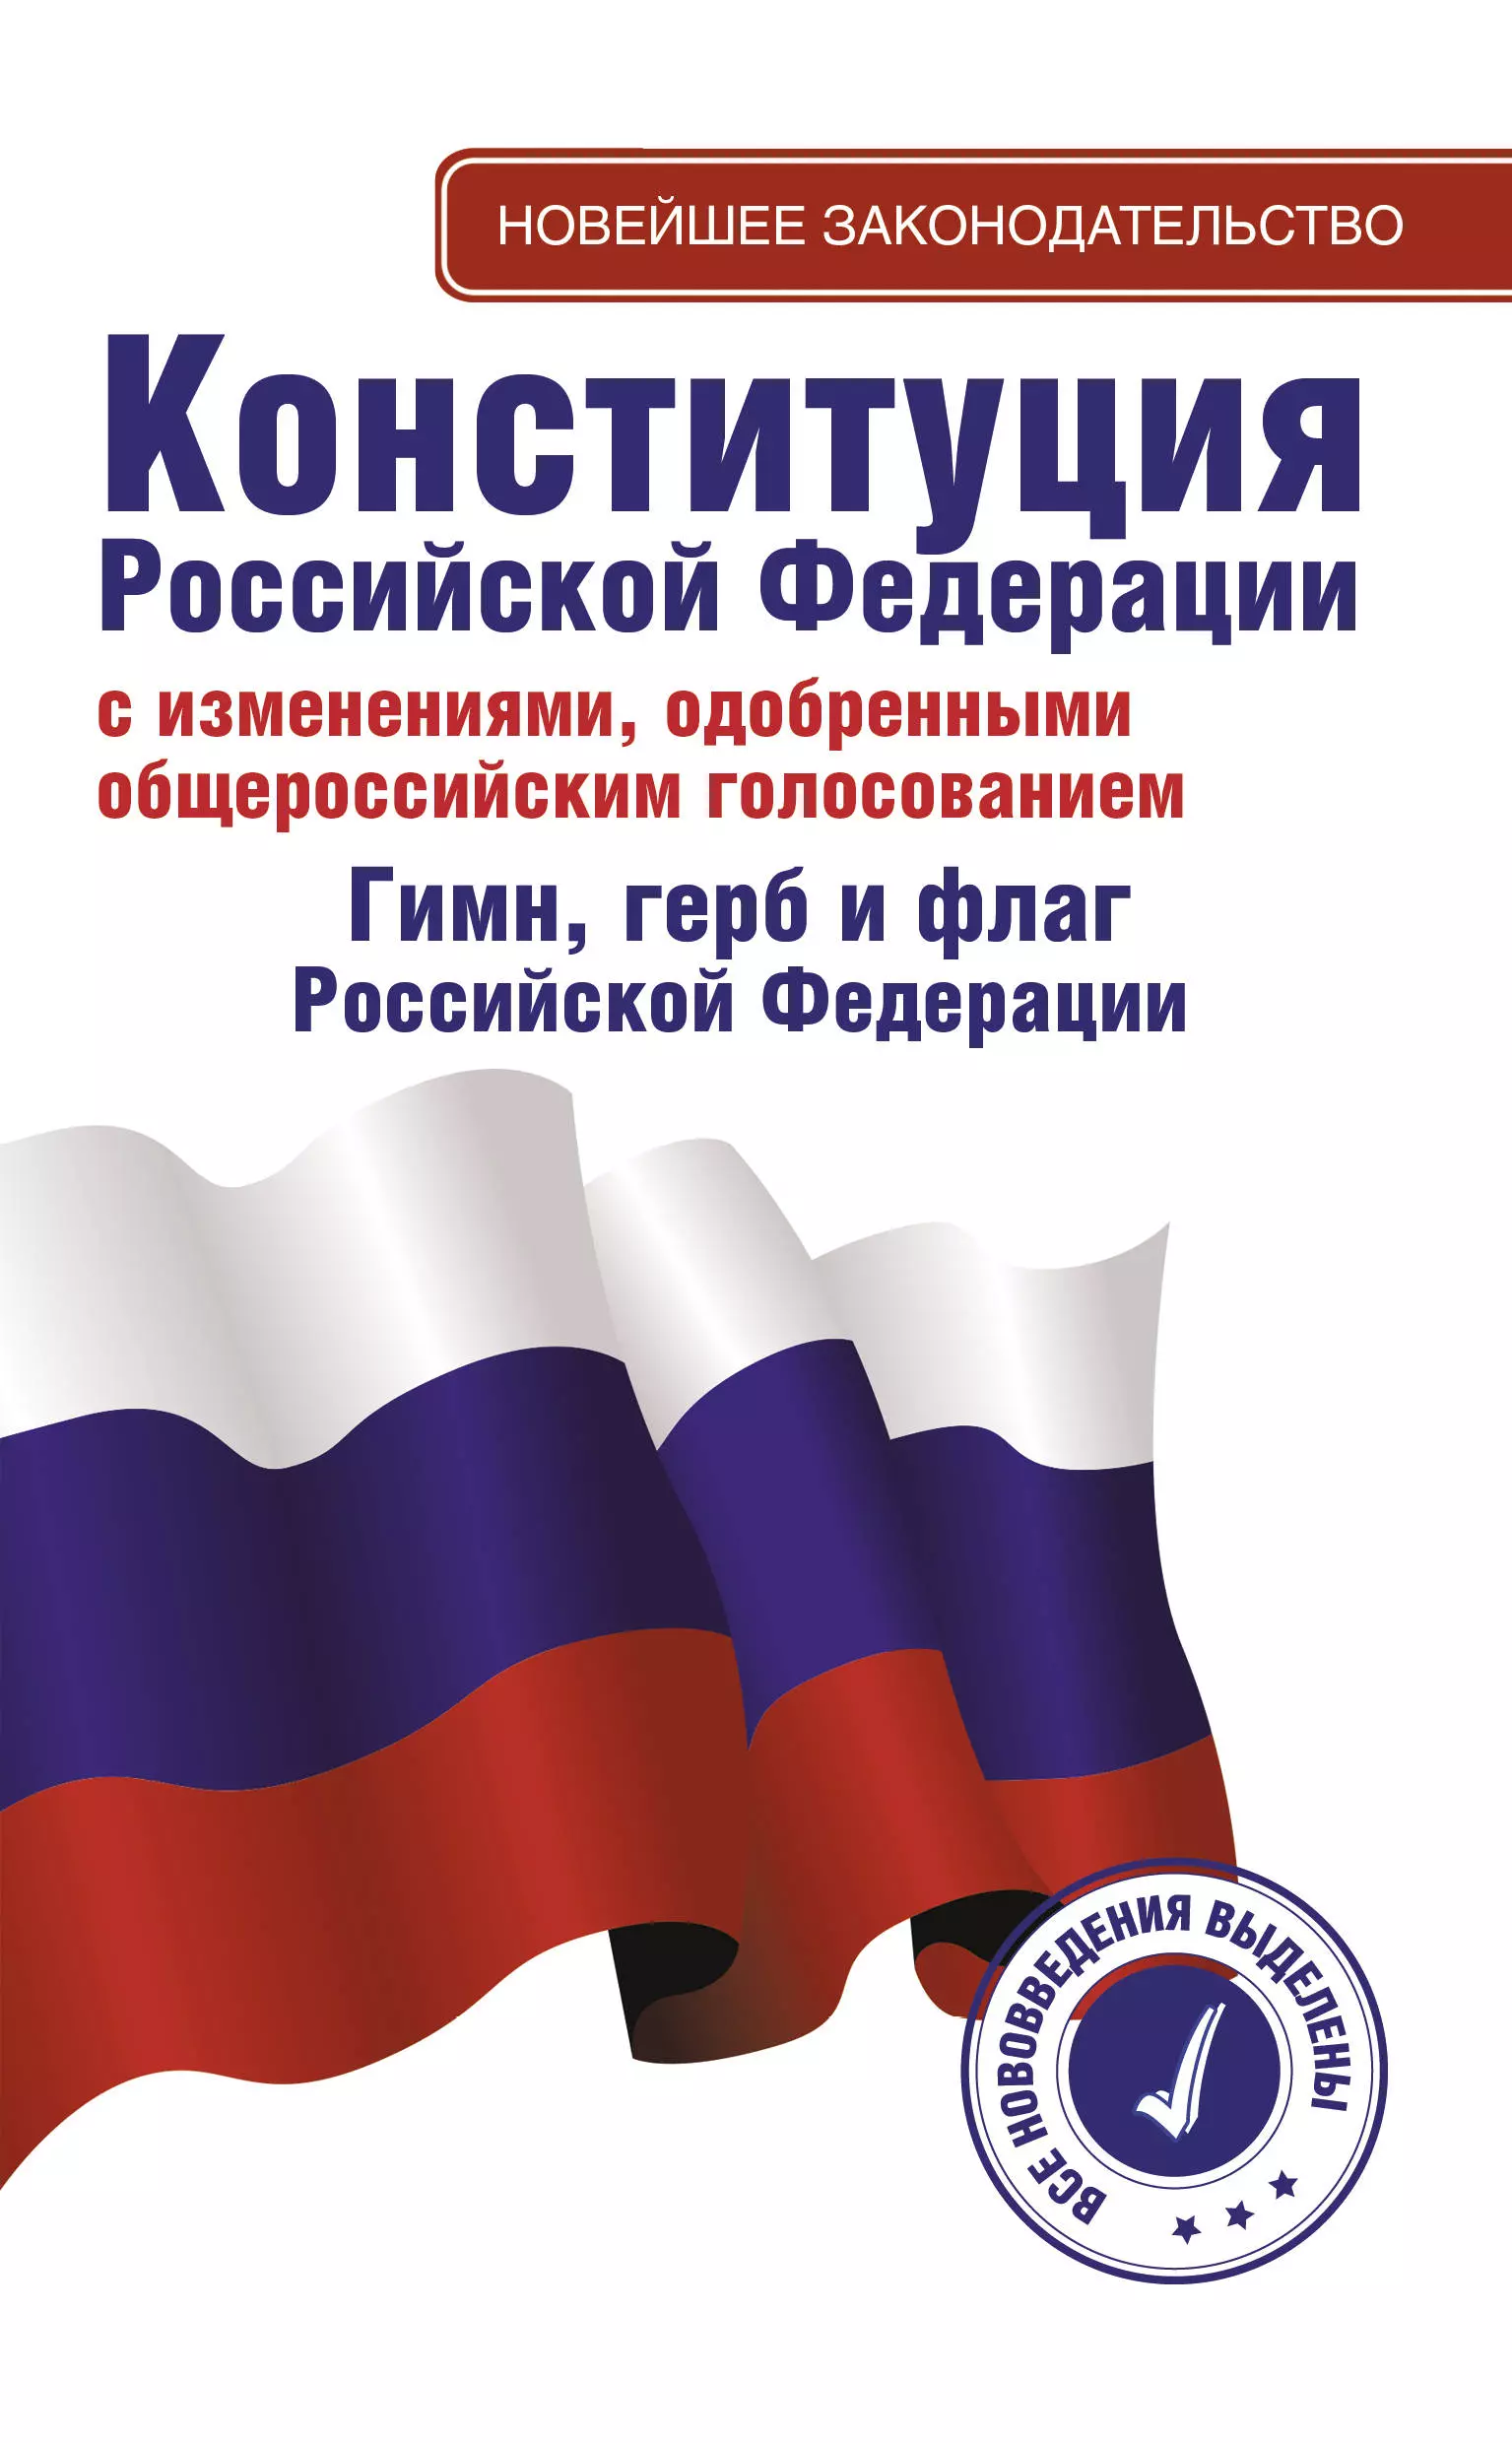  - Конституция Российской Федерации с изменениями, одобренными общероссийским голосованием 1 июля 2020 года